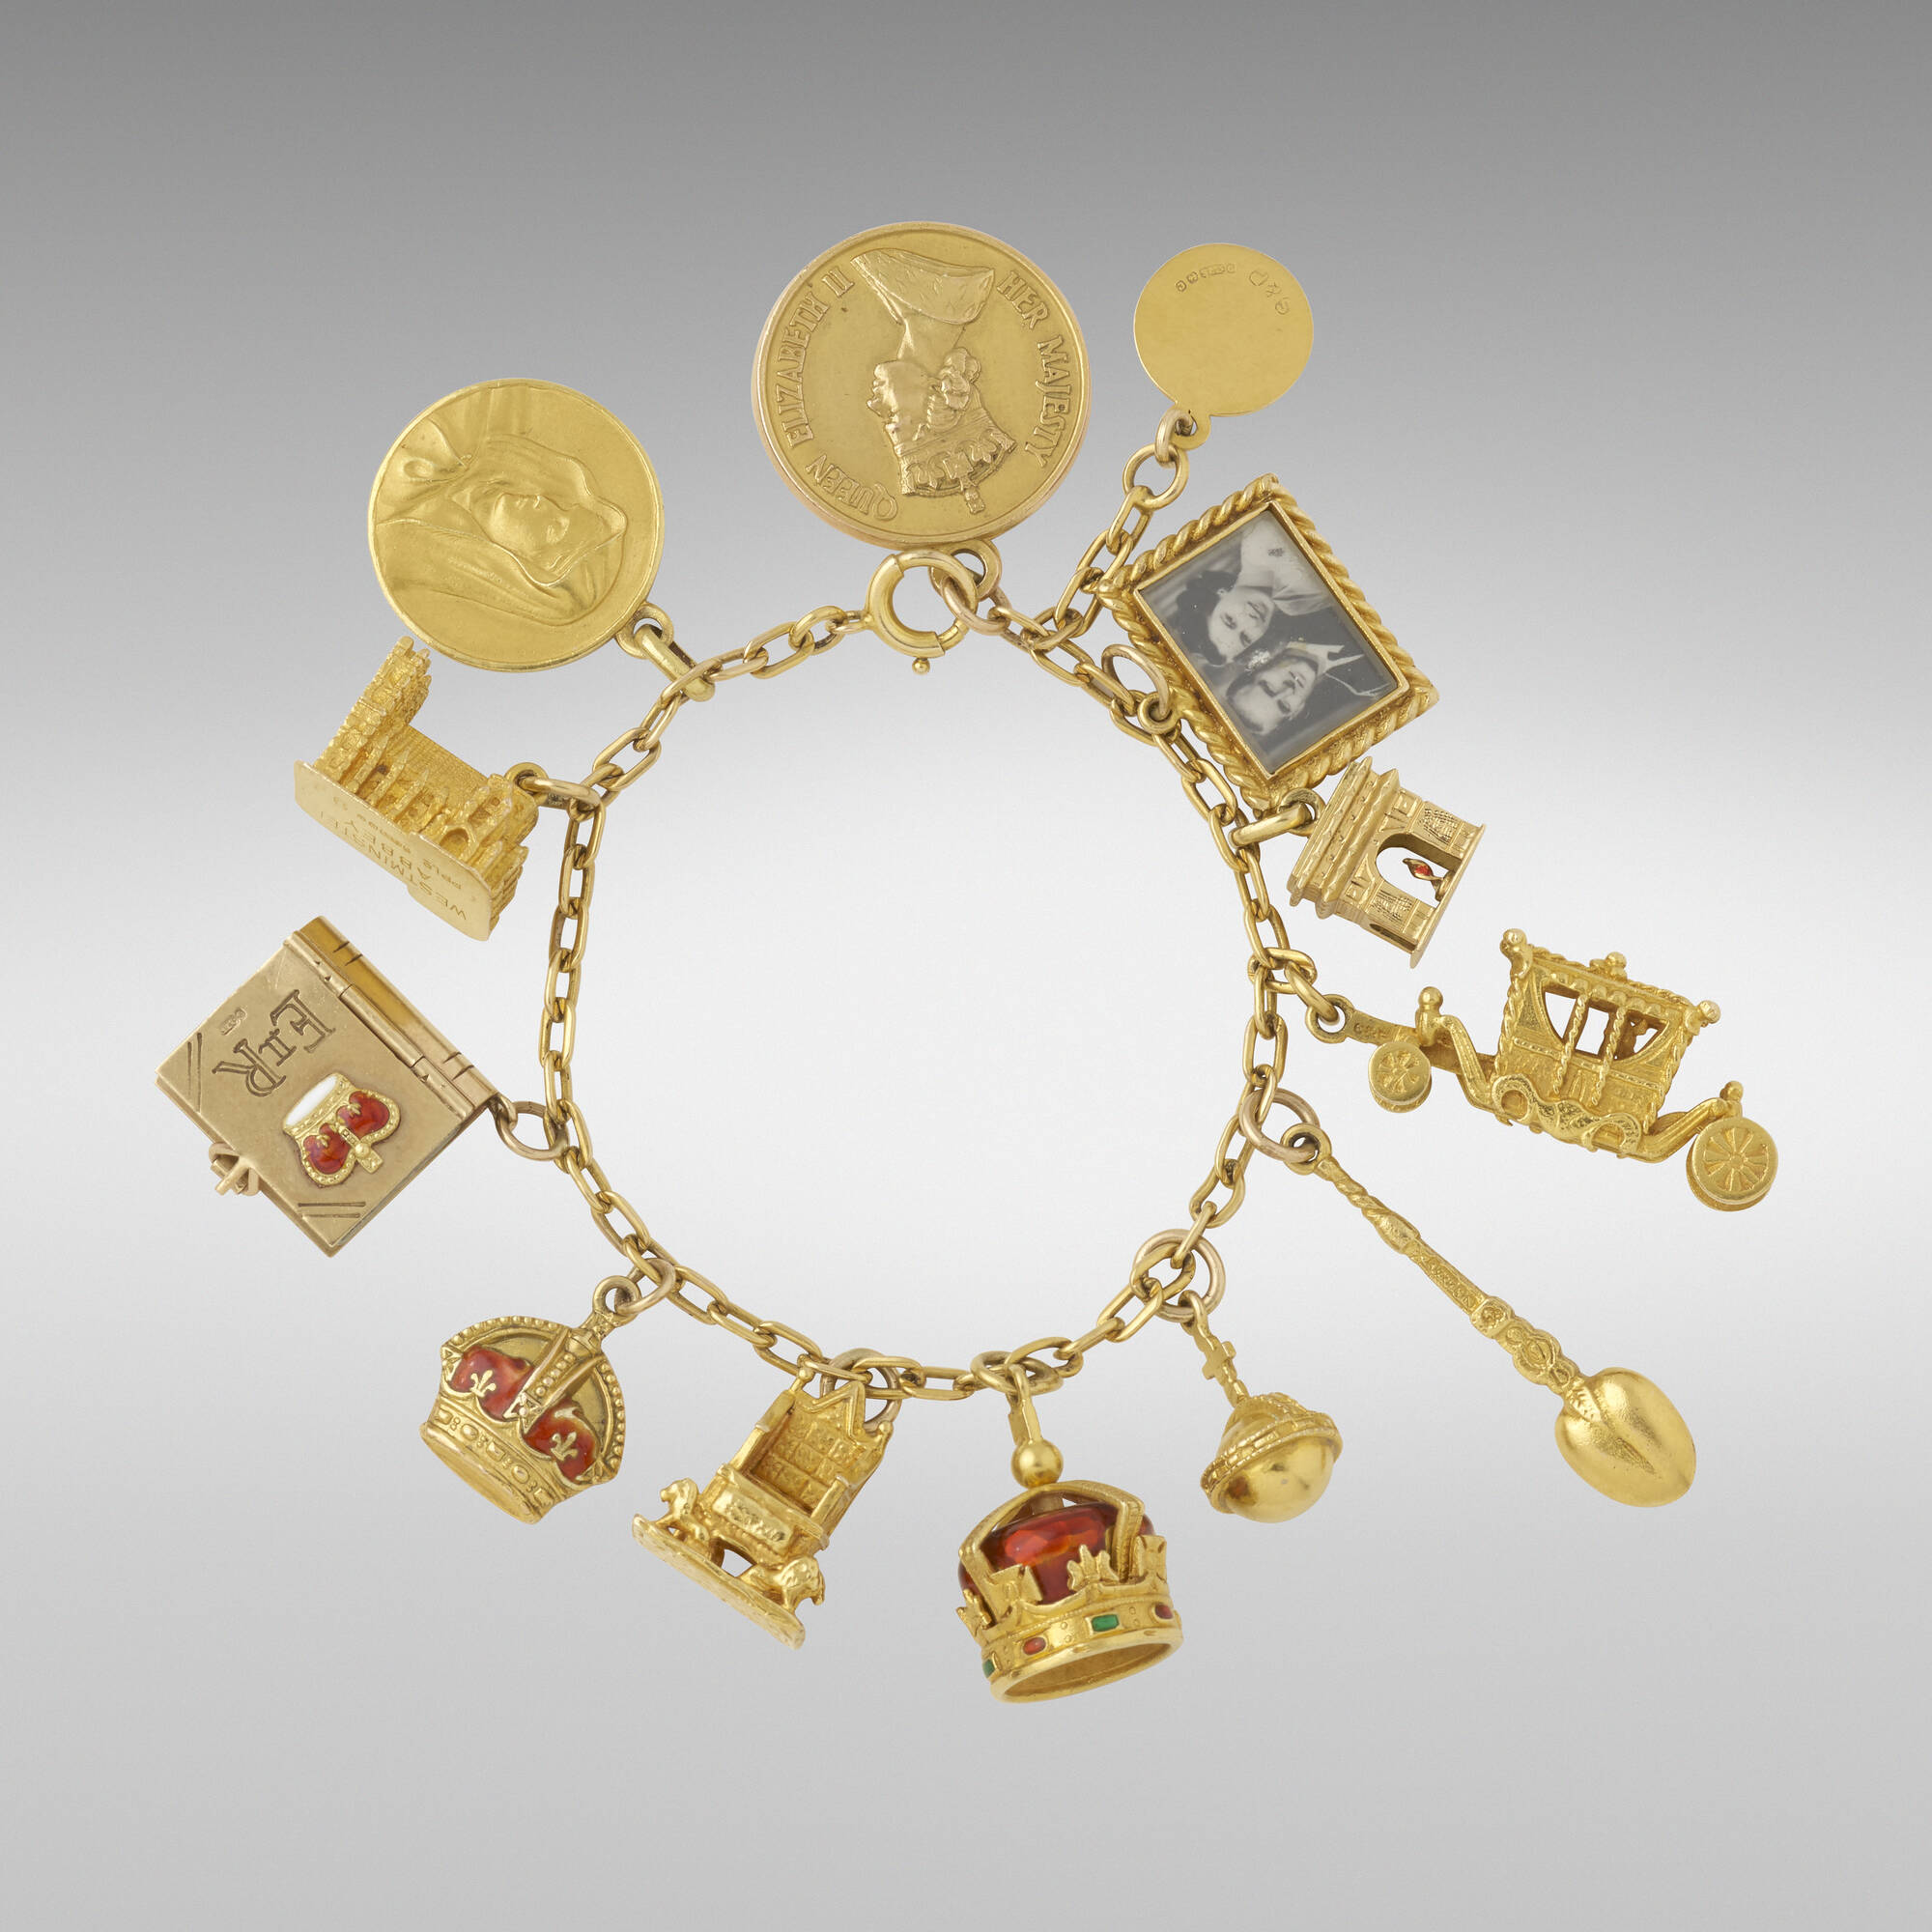 Sold at Auction: Vintage 14K Gold Charm Bracelet